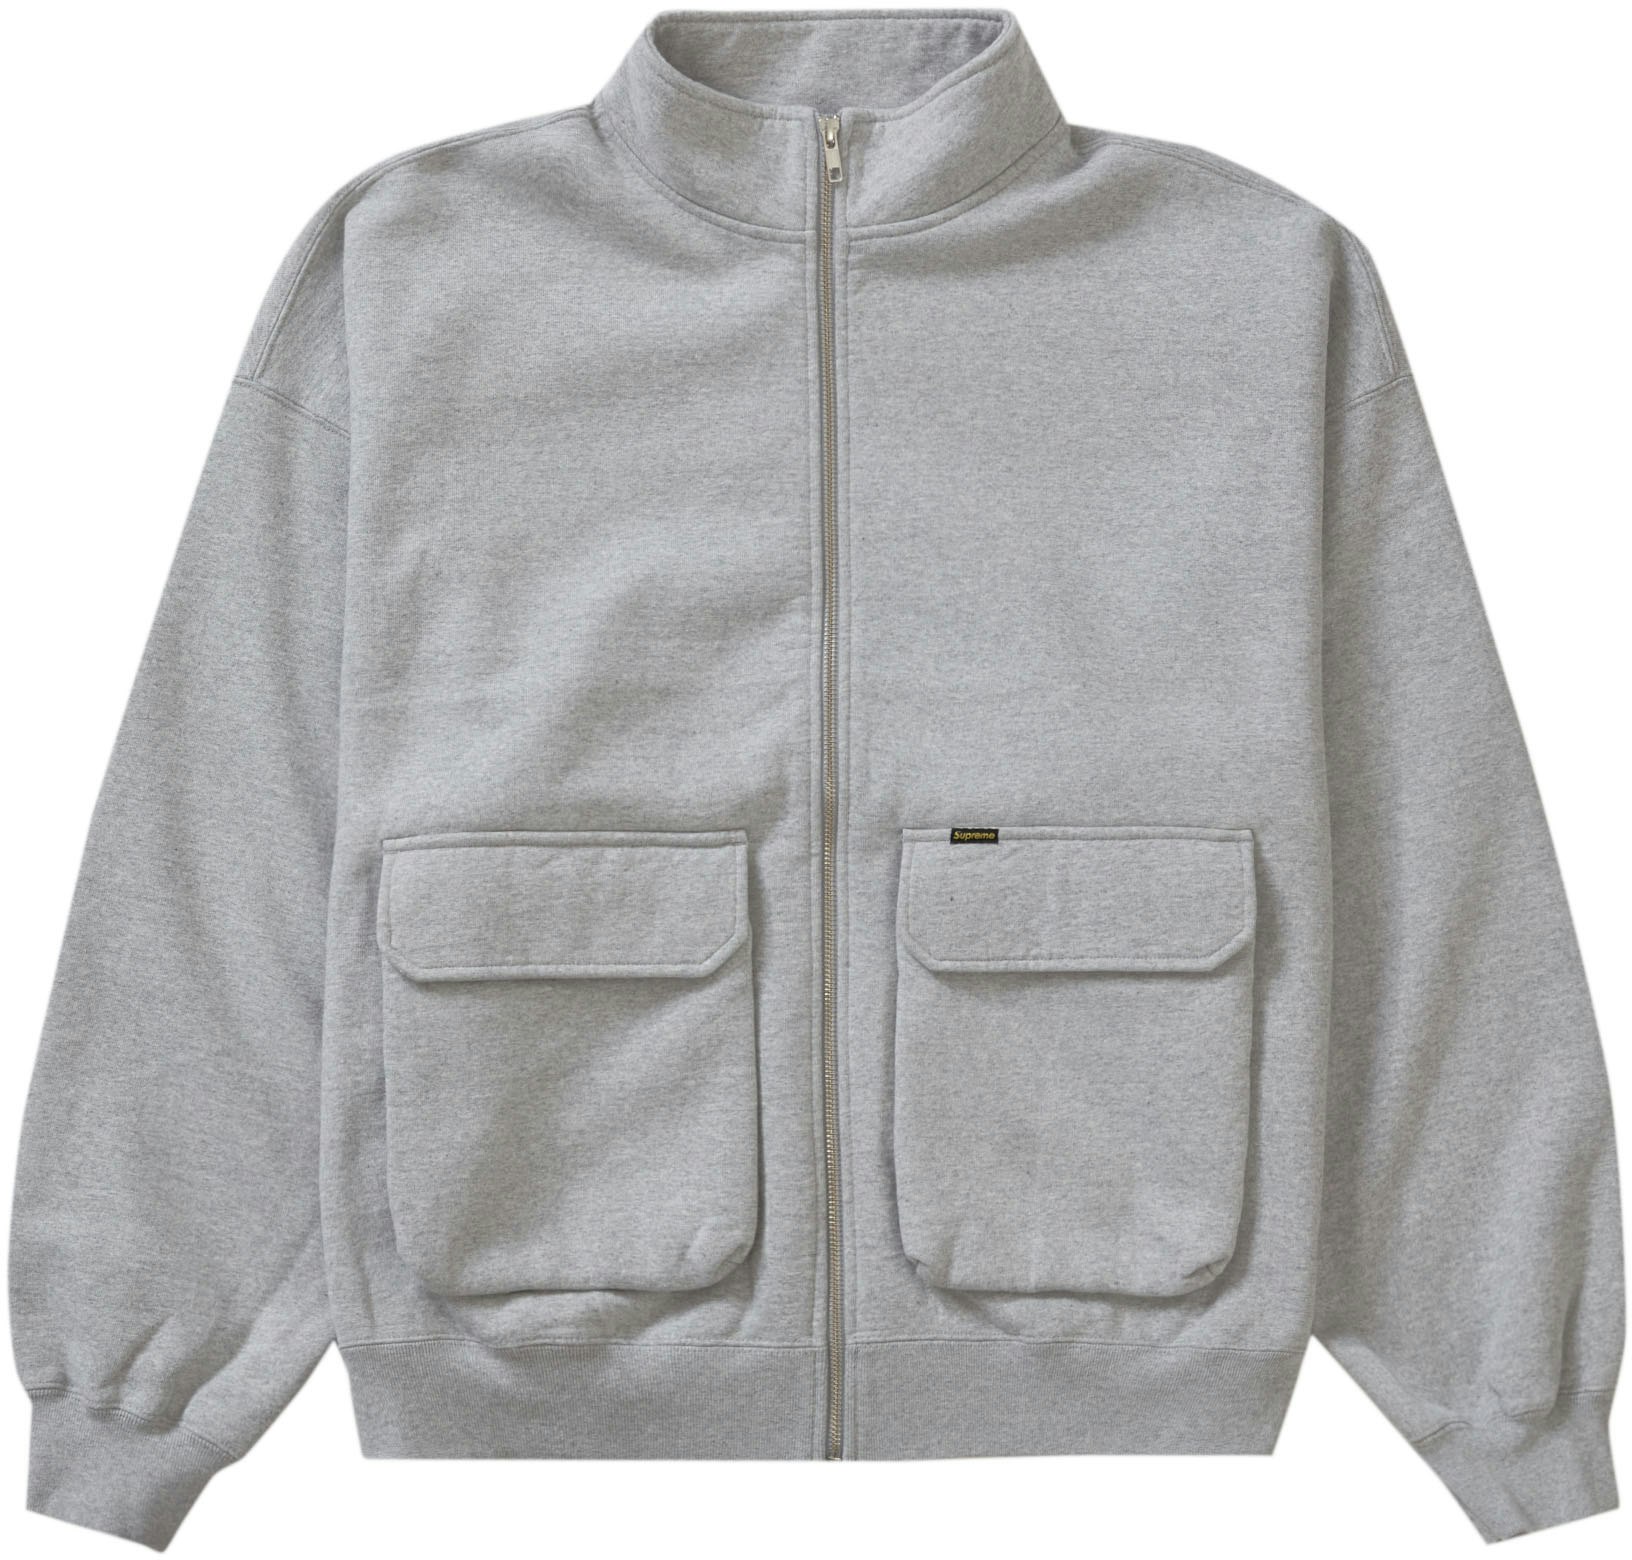 Supreme Cargo Pocket Zip Up Sweatshirt Heather Grey - Novelship